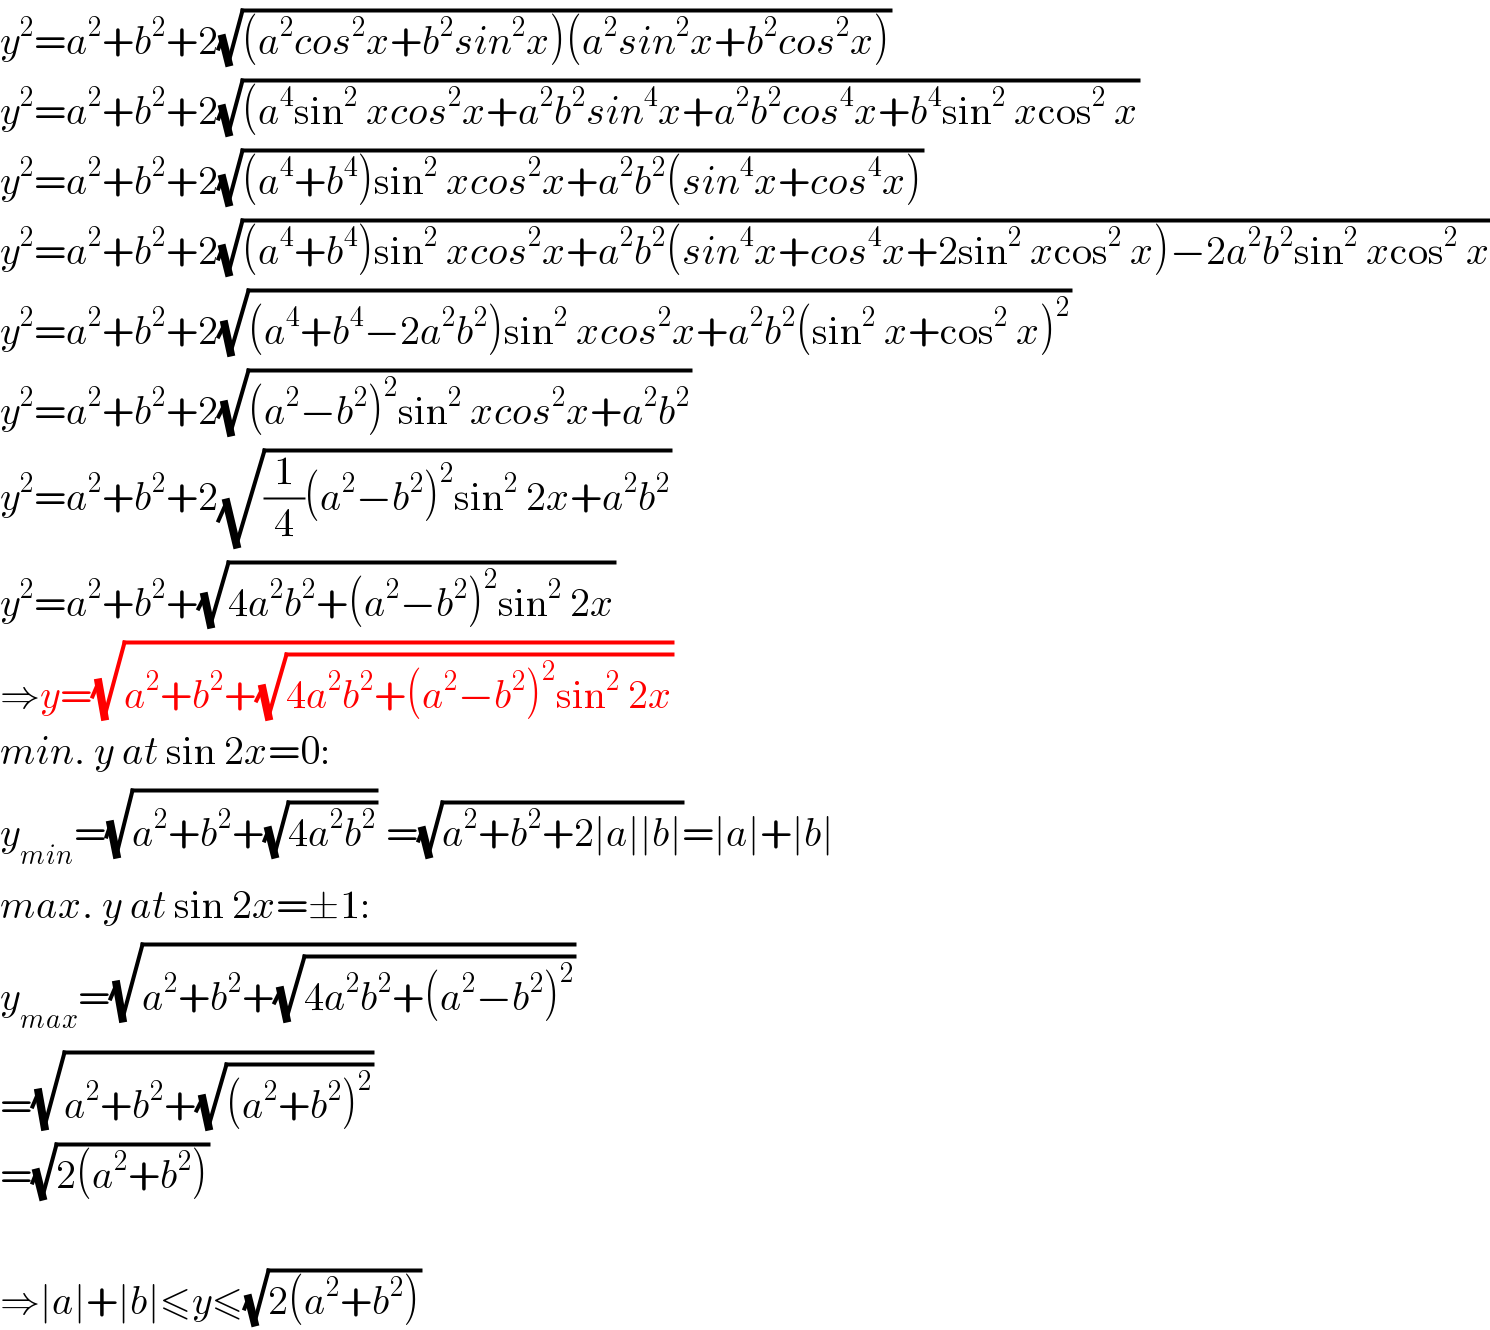 y^2 =a^2 +b^2 +2(√((a^2 cos^2 x+b^2 sin^2 x)(a^2 sin^2 x+b^2 cos^2 x)))  y^2 =a^2 +b^2 +2(√((a^4 sin^2  xcos^2 x+a^2 b^2 sin^4 x+a^2 b^2 cos^4 x+b^4 sin^2  xcos^2  x))  y^2 =a^2 +b^2 +2(√((a^4 +b^4 )sin^2  xcos^2 x+a^2 b^2 (sin^4 x+cos^4 x)))  y^2 =a^2 +b^2 +2(√((a^4 +b^4 )sin^2  xcos^2 x+a^2 b^2 (sin^4 x+cos^4 x+2sin^2  xcos^2  x)−2a^2 b^2 sin^2  xcos^2  x))  y^2 =a^2 +b^2 +2(√((a^4 +b^4 −2a^2 b^2 )sin^2  xcos^2 x+a^2 b^2 (sin^2  x+cos^2  x)^2 ))  y^2 =a^2 +b^2 +2(√((a^2 −b^2 )^2 sin^2  xcos^2 x+a^2 b^2 ))  y^2 =a^2 +b^2 +2(√((1/4)(a^2 −b^2 )^2 sin^2  2x+a^2 b^2 ))  y^2 =a^2 +b^2 +(√(4a^2 b^2 +(a^2 −b^2 )^2 sin^2  2x))  ⇒y=(√(a^2 +b^2 +(√(4a^2 b^2 +(a^2 −b^2 )^2 sin^2  2x))))  min. y at sin 2x=0:  y_(min) =(√(a^2 +b^2 +(√(4a^2 b^2 )))) =(√(a^2 +b^2 +2∣a∣∣b∣))=∣a∣+∣b∣  max. y at sin 2x=±1:  y_(max) =(√(a^2 +b^2 +(√(4a^2 b^2 +(a^2 −b^2 )^2 ))))  =(√(a^2 +b^2 +(√((a^2 +b^2 )^2 ))))  =(√(2(a^2 +b^2 )))    ⇒∣a∣+∣b∣≤y≤(√(2(a^2 +b^2 )))  